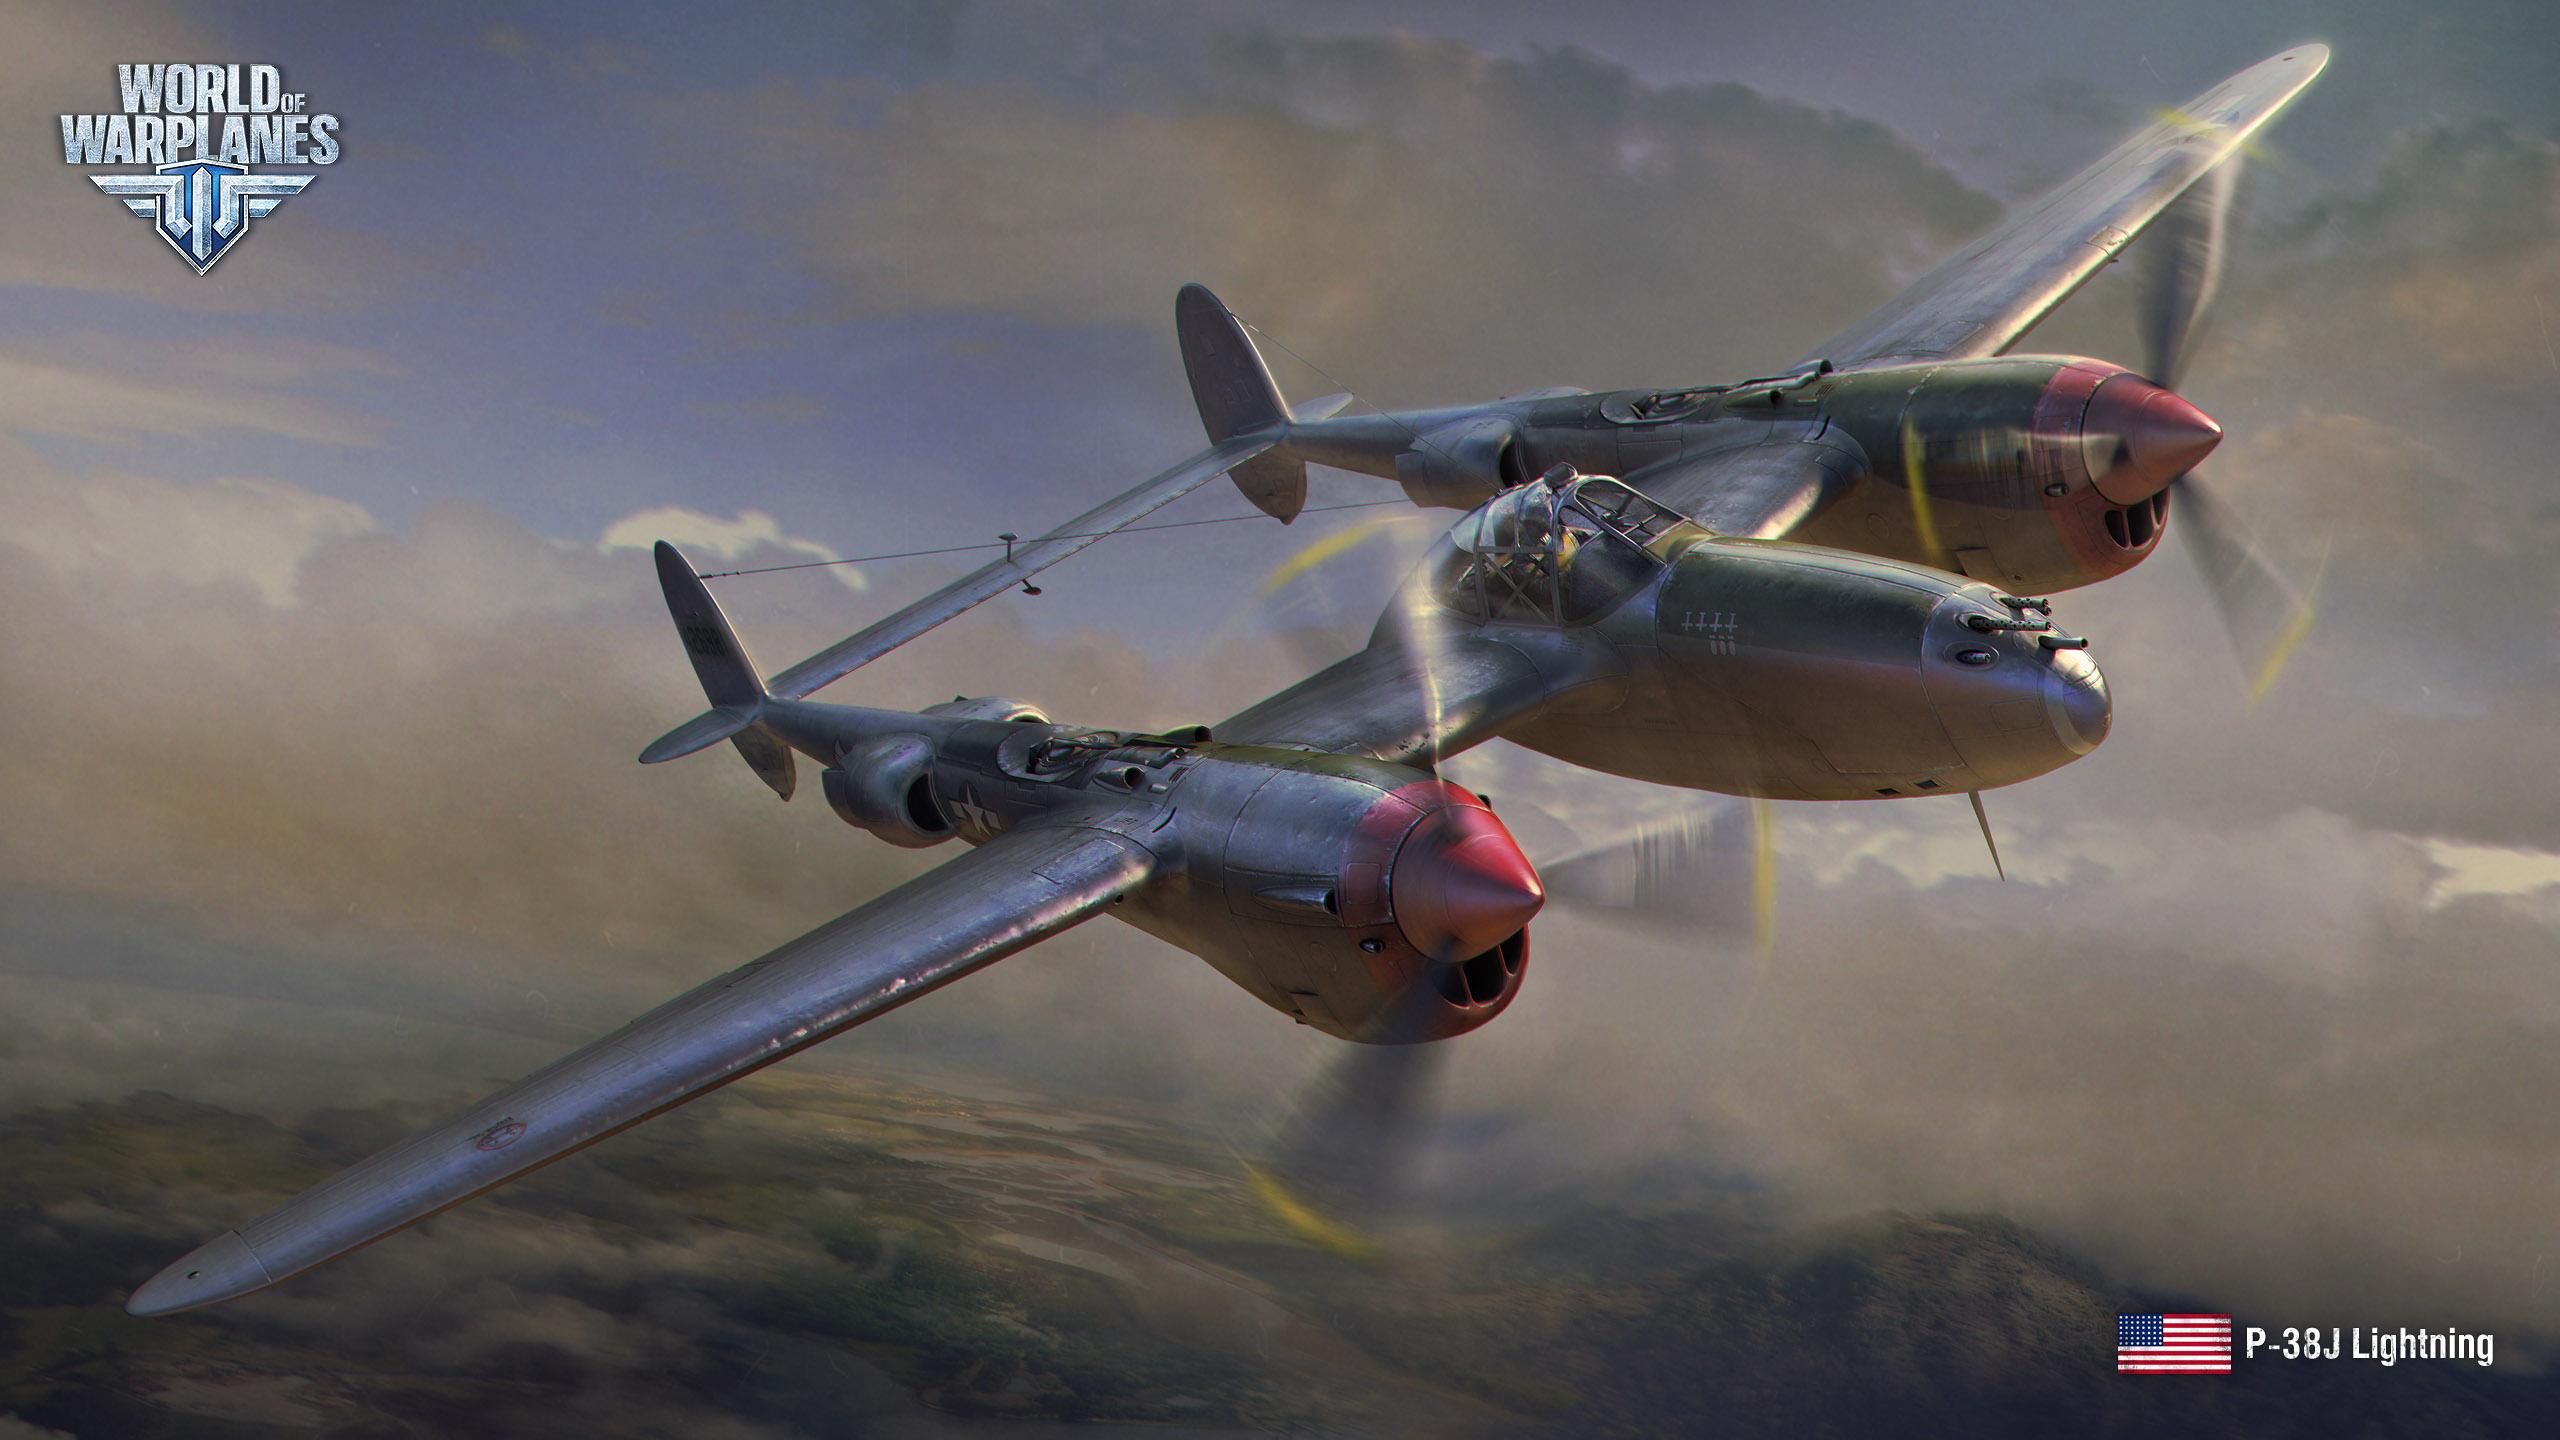 August Wallpaper. World of Warplanes